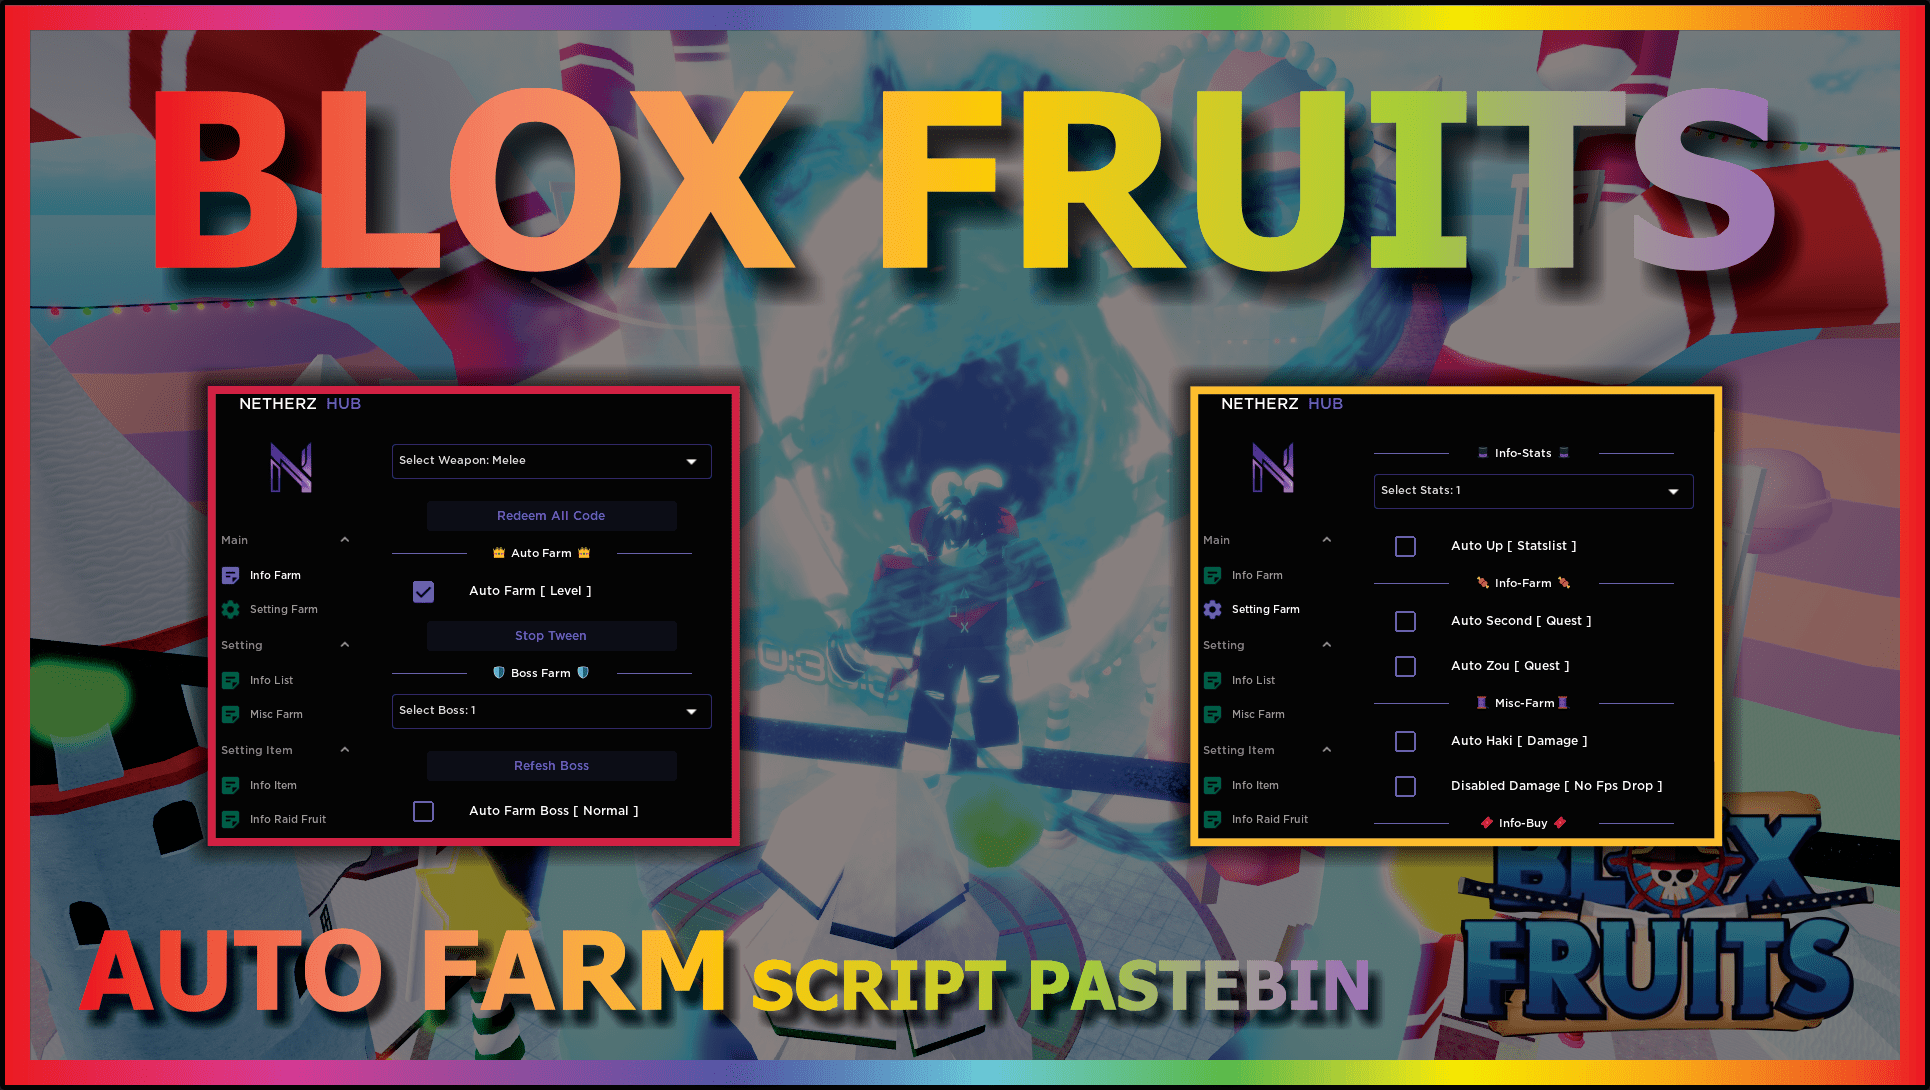 Blox Fruits Script Mobile (Dragon Hub) - Auto Farm Level, Fast Attack